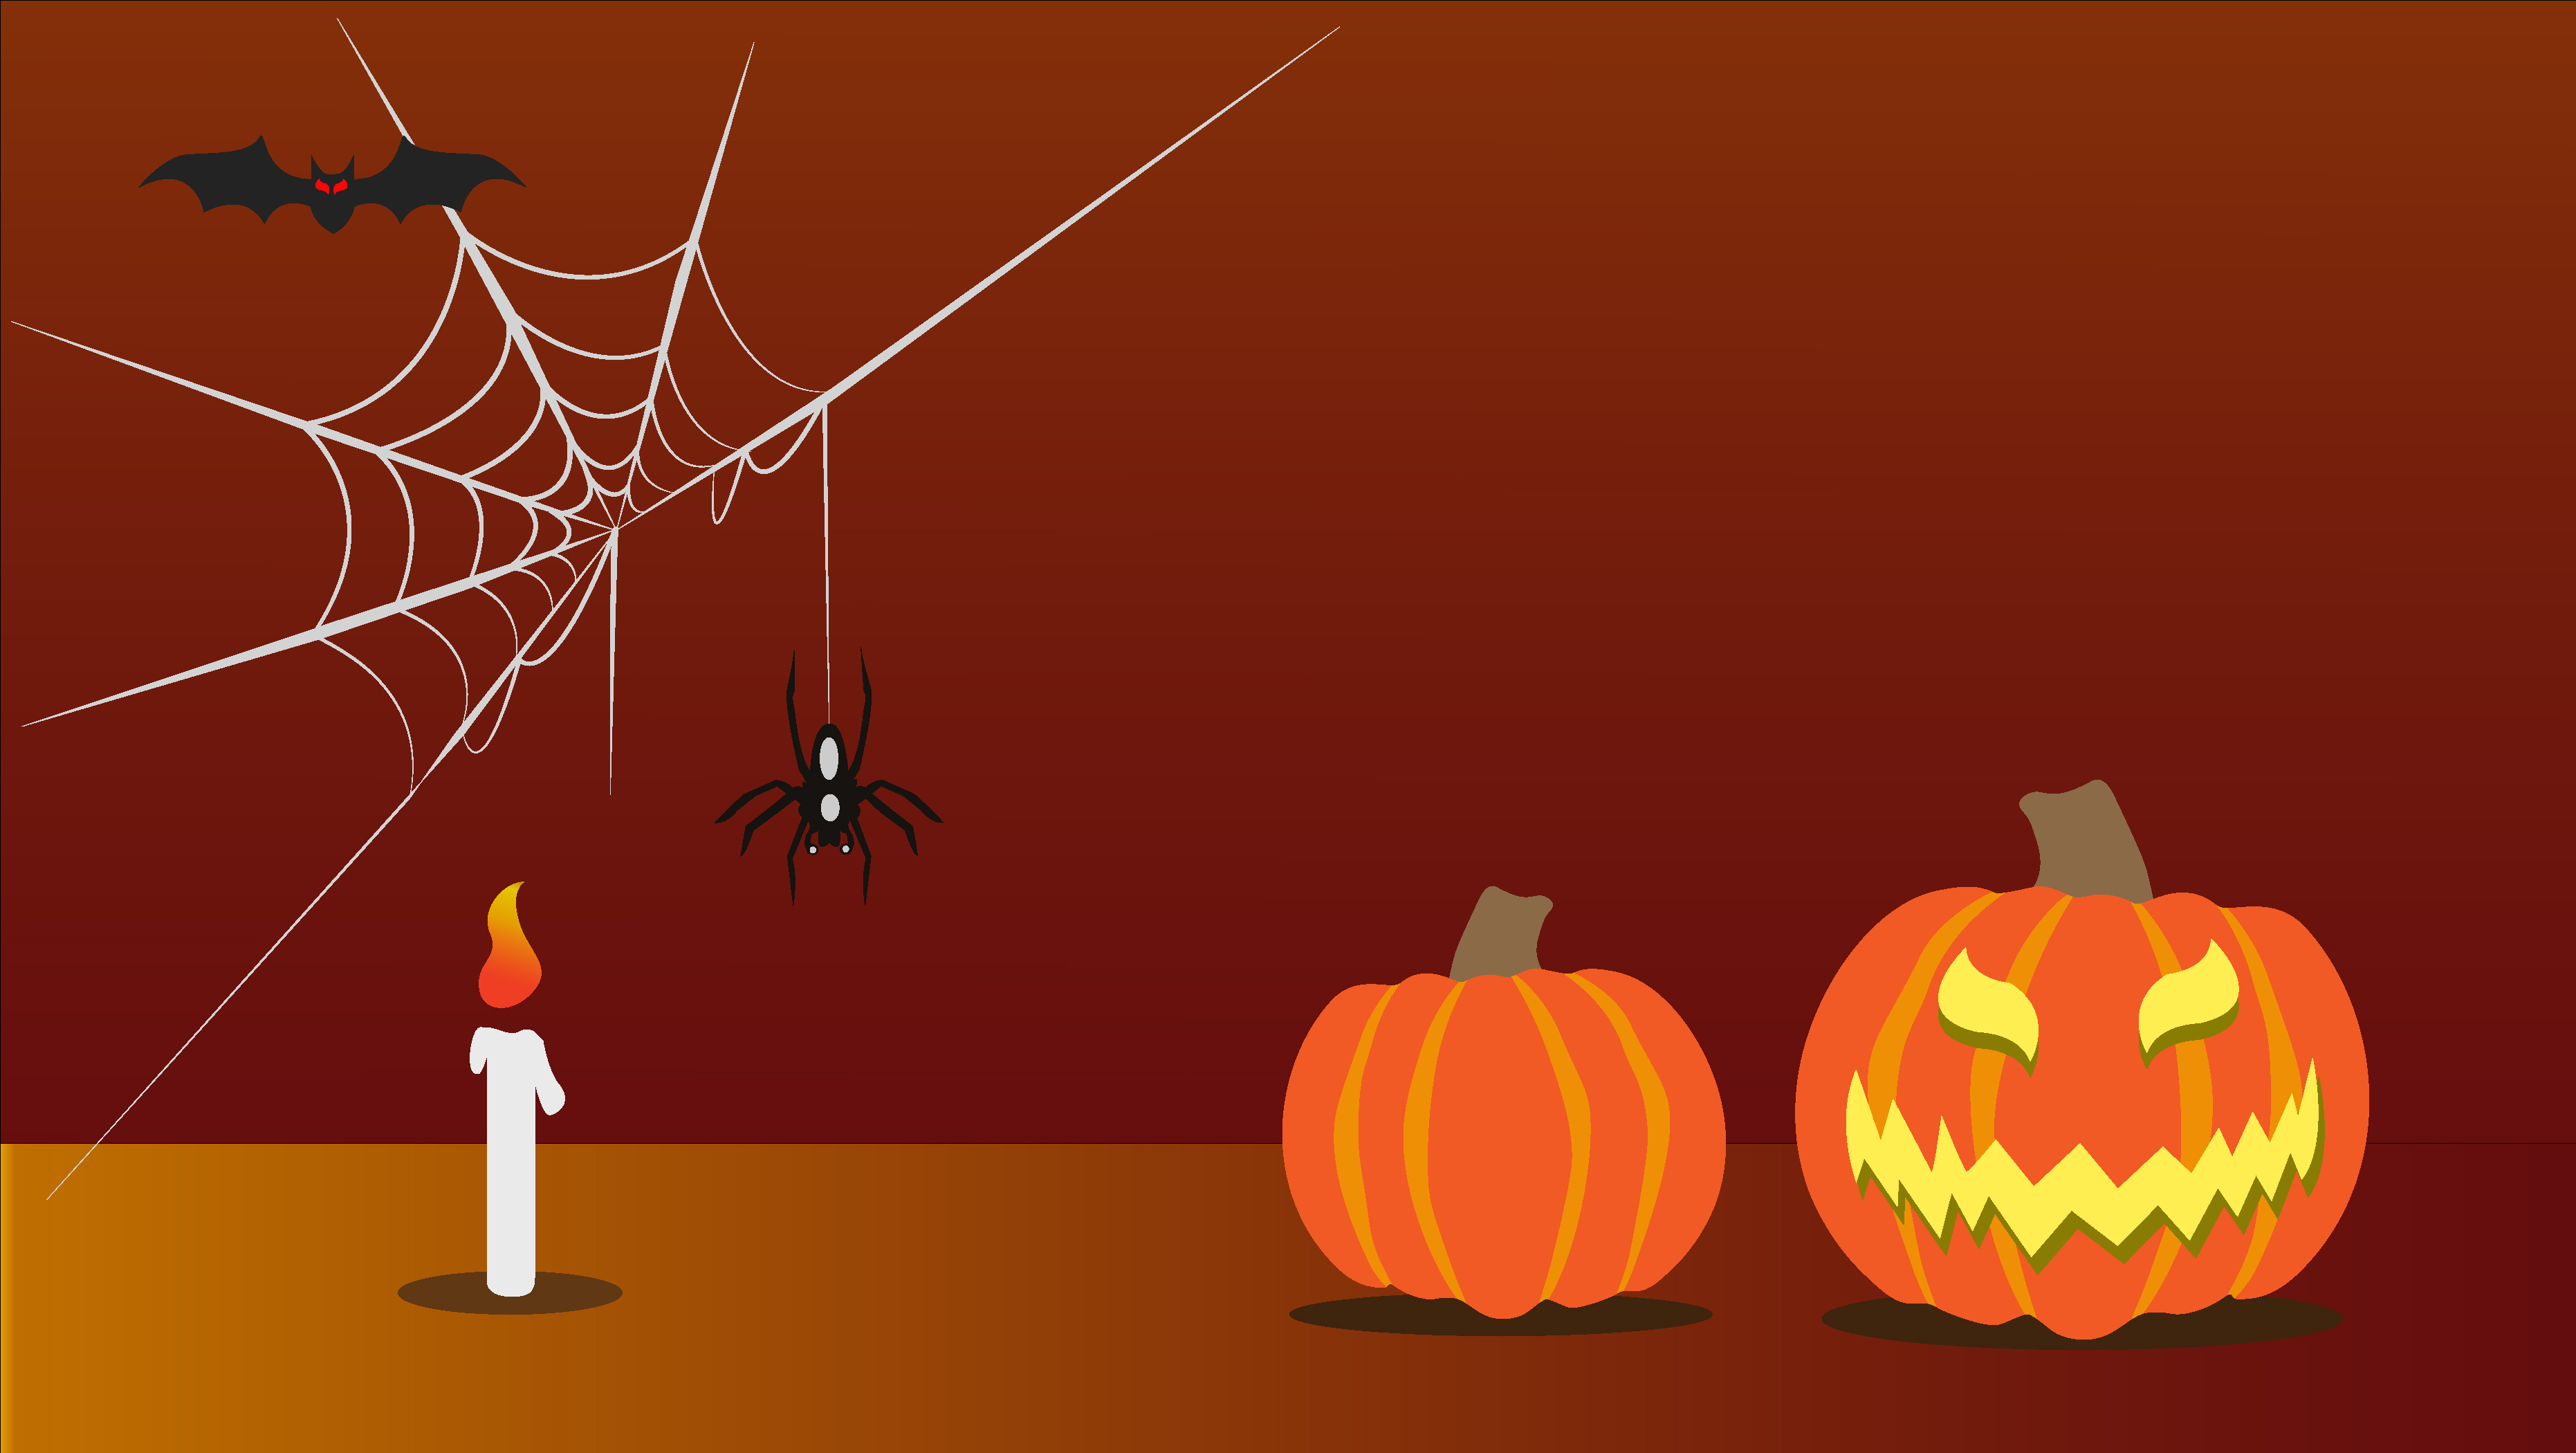  Orange  Halloween  Background Download Free Vectors 